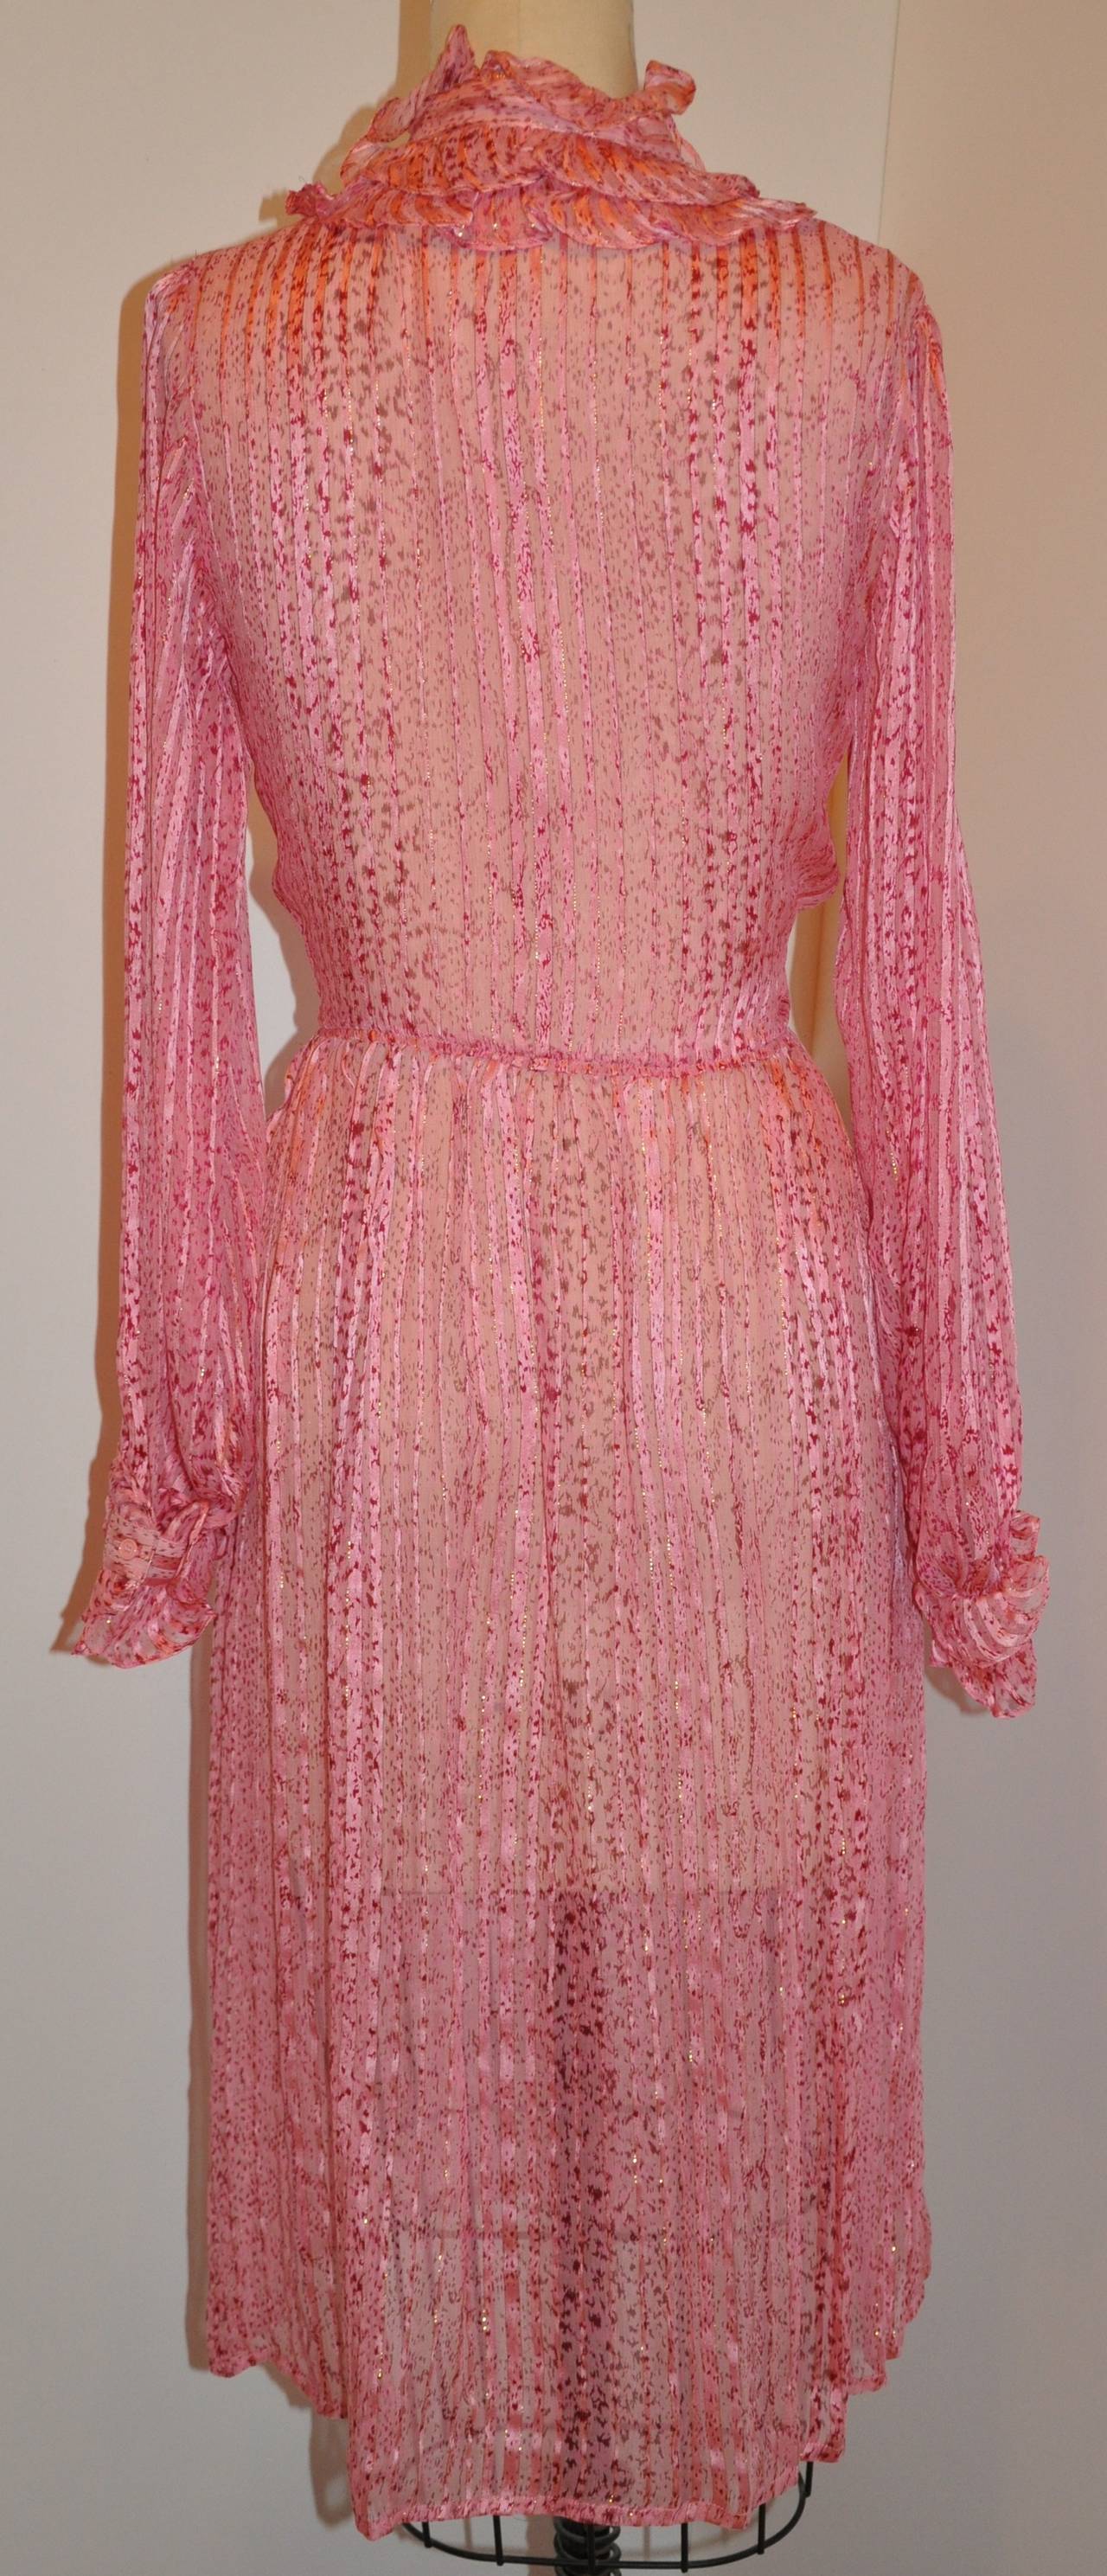 Saks Fifth Avenue Schattierungen von Rose, rot und rosa Seide mit Seide Chiffon Streifen Rüsche Kleid hat einen Center-Front-Schlitz auf der Vorderseite, die 8 